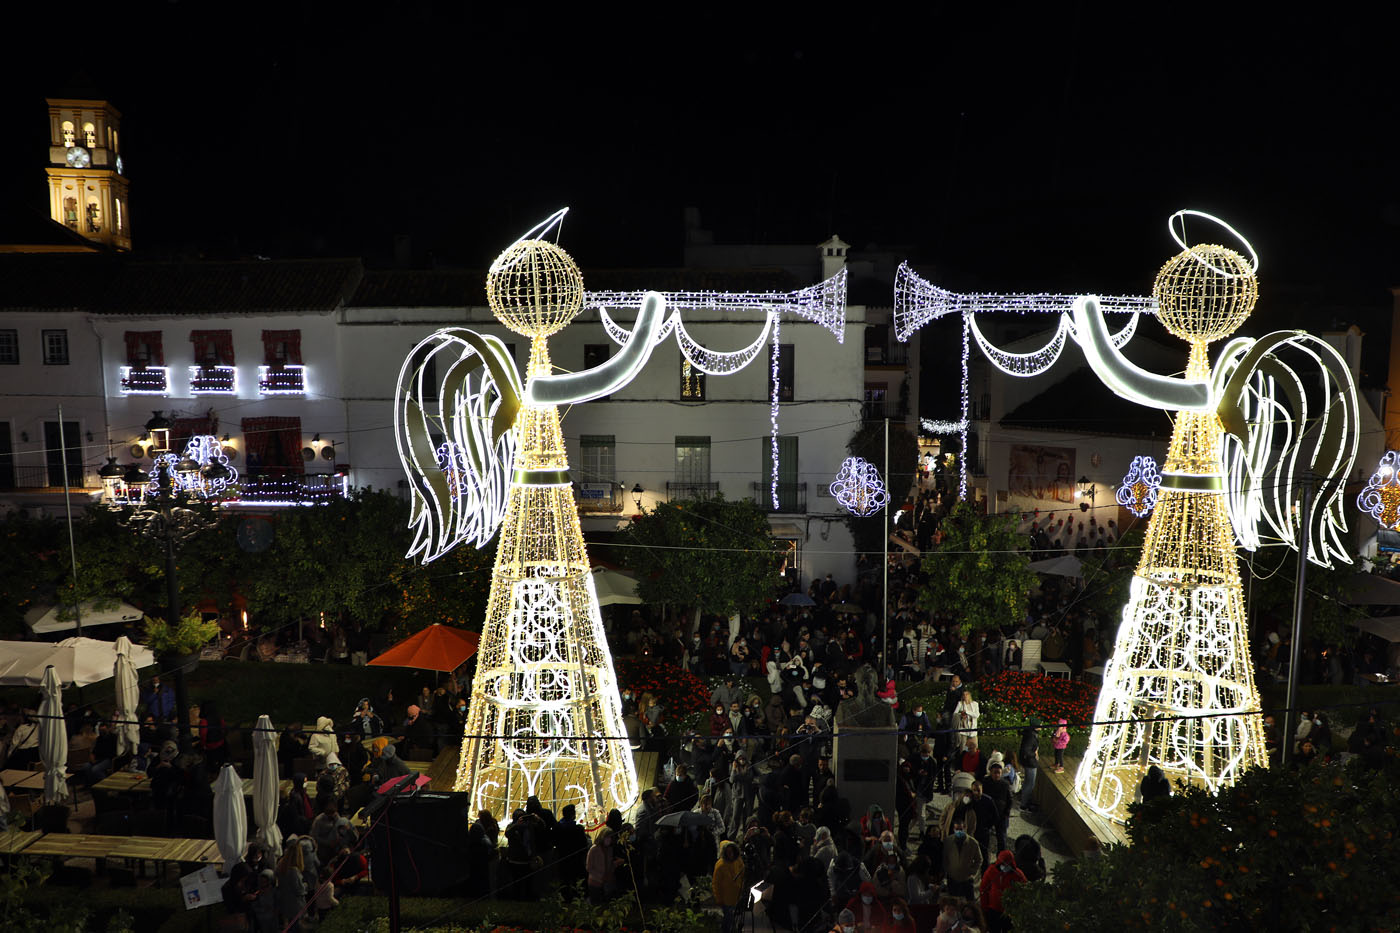 El encendido del alumbrado marca el inicio de la Navidad en Marbella